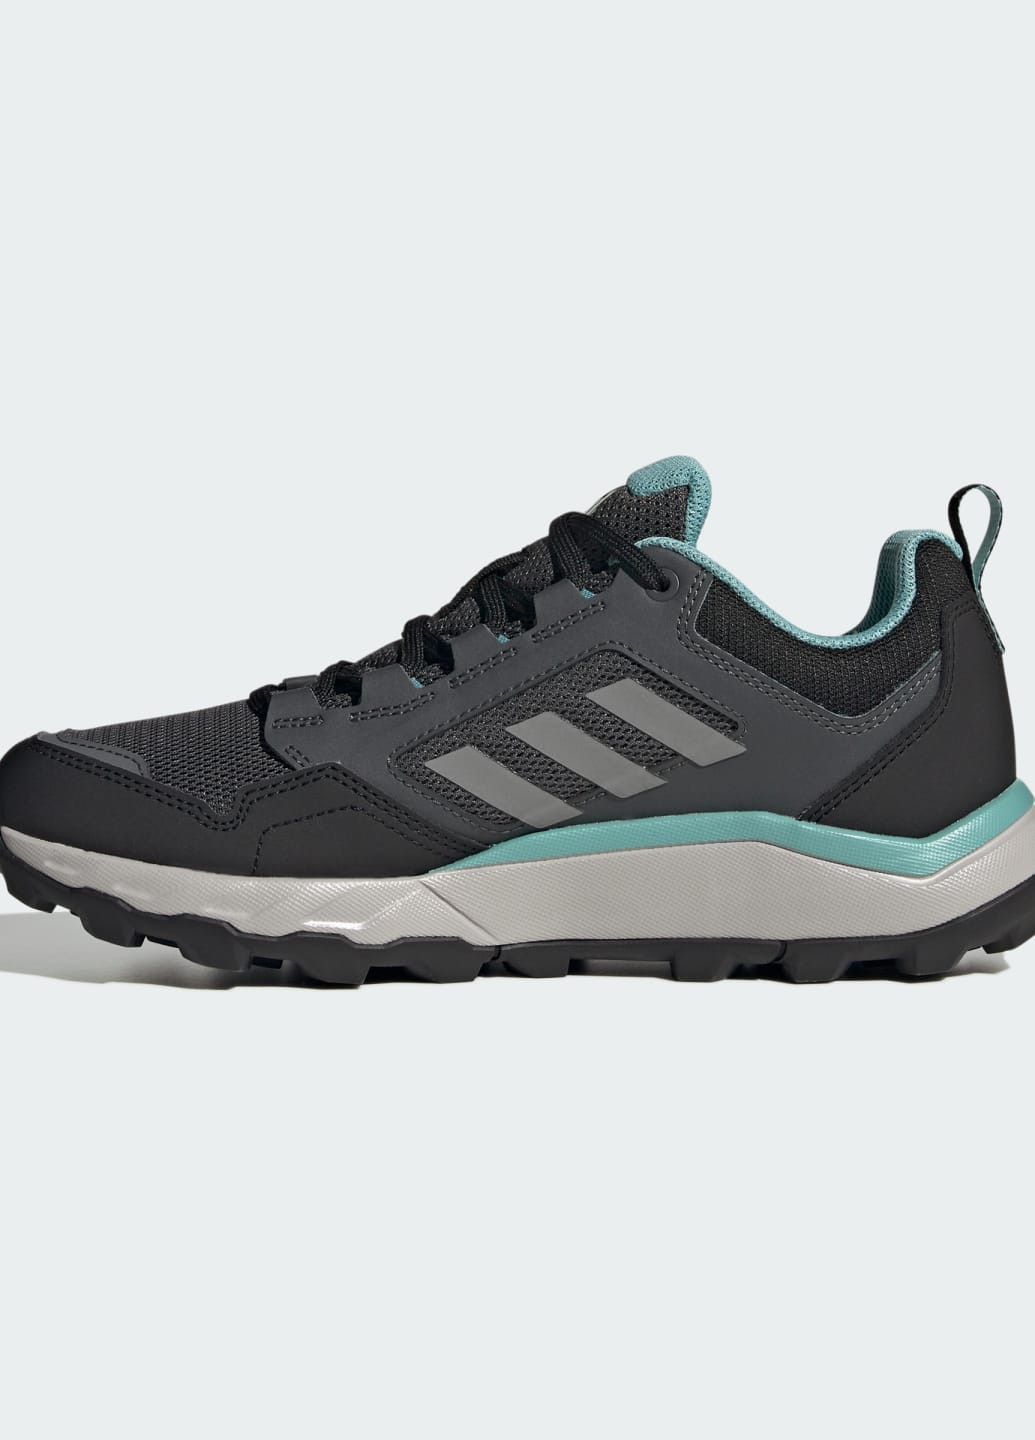 Черные всесезонные кроссовки tracerocker 2.0 trail running adidas